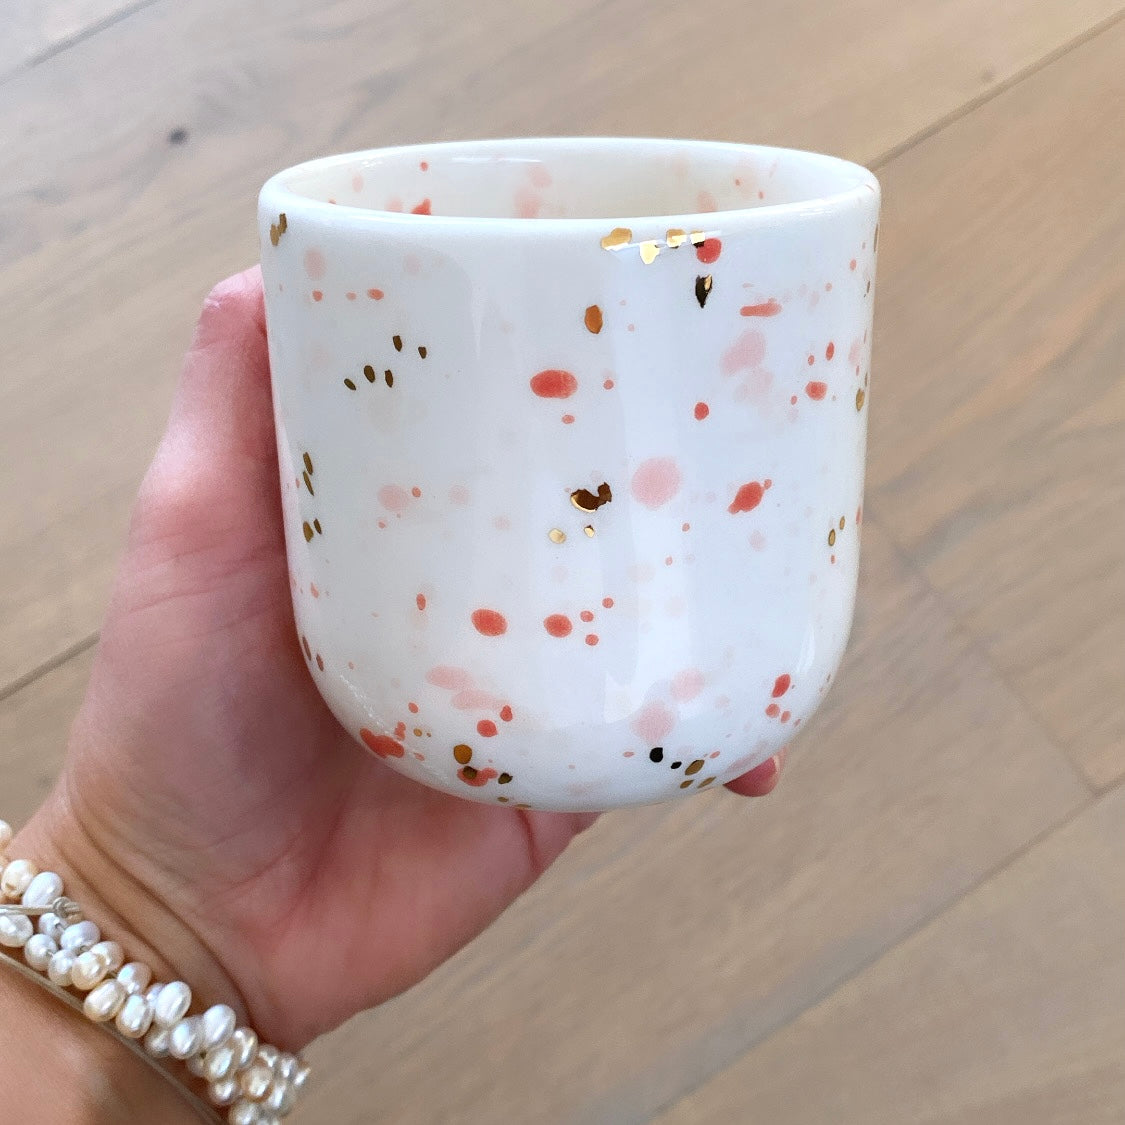 Marinski Heartmades latte kop speckles - coral, pink og gold